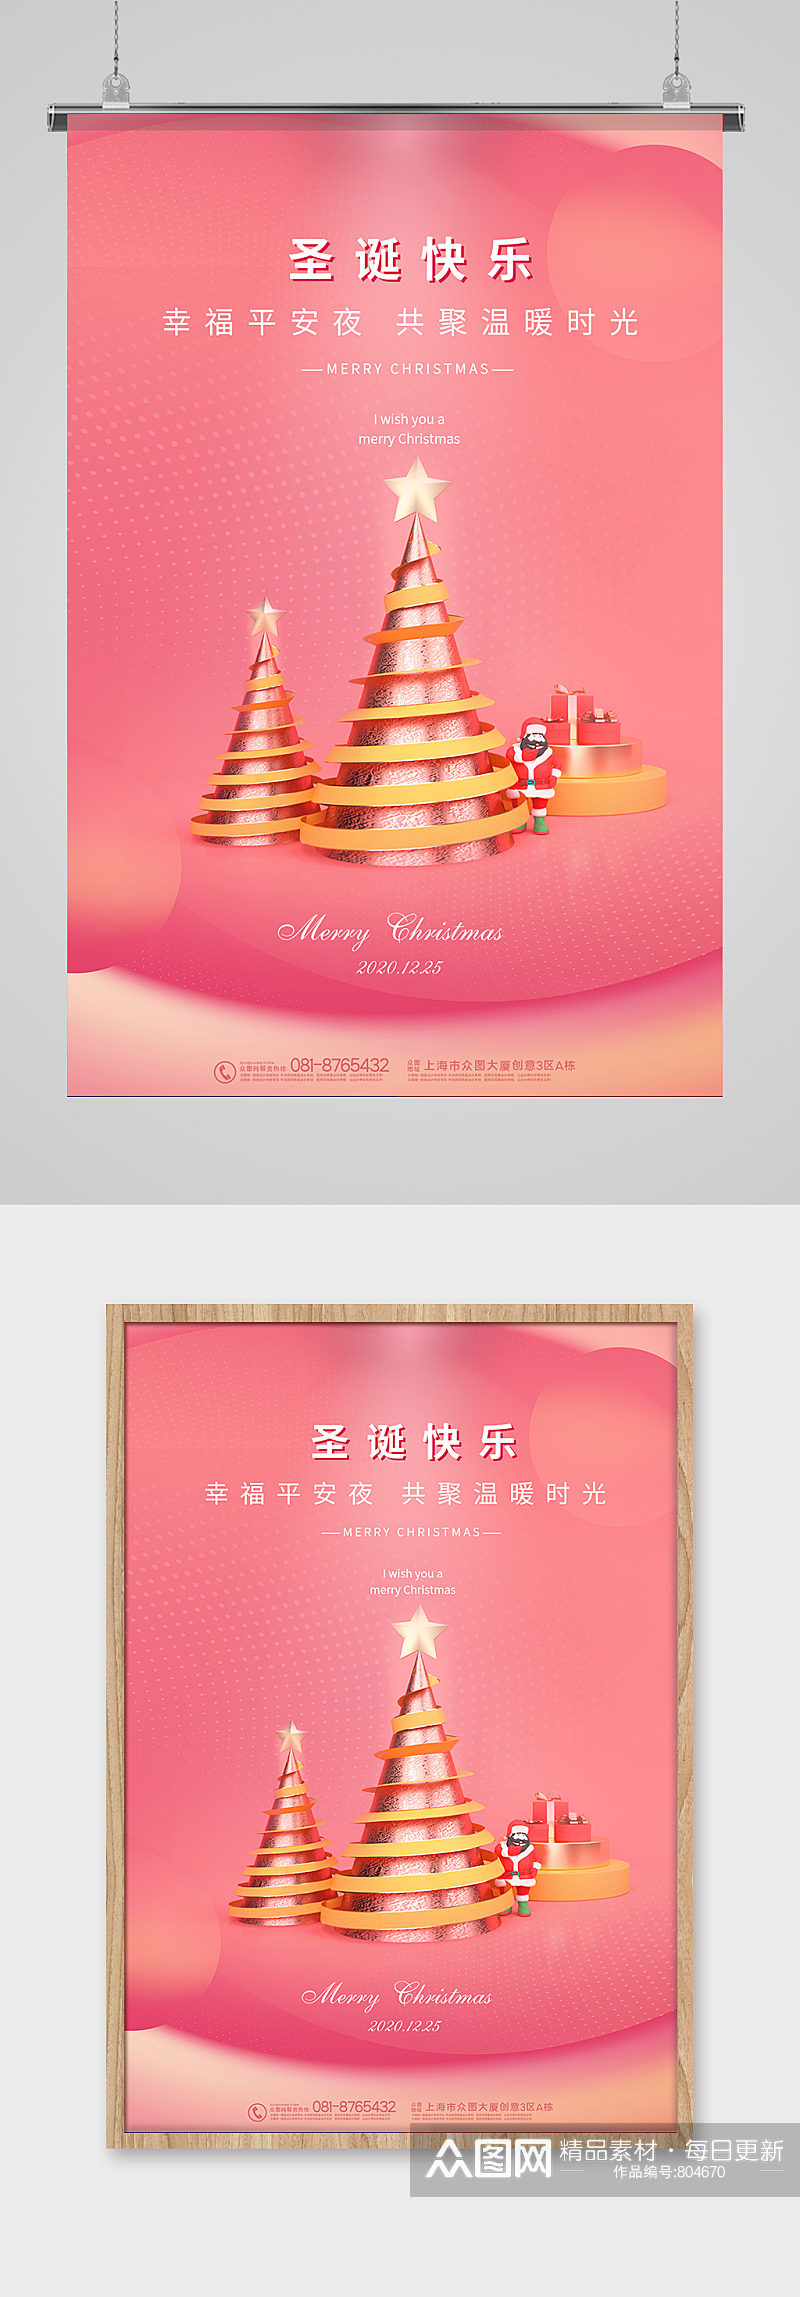 粉色温馨圣诞节快乐海报素材